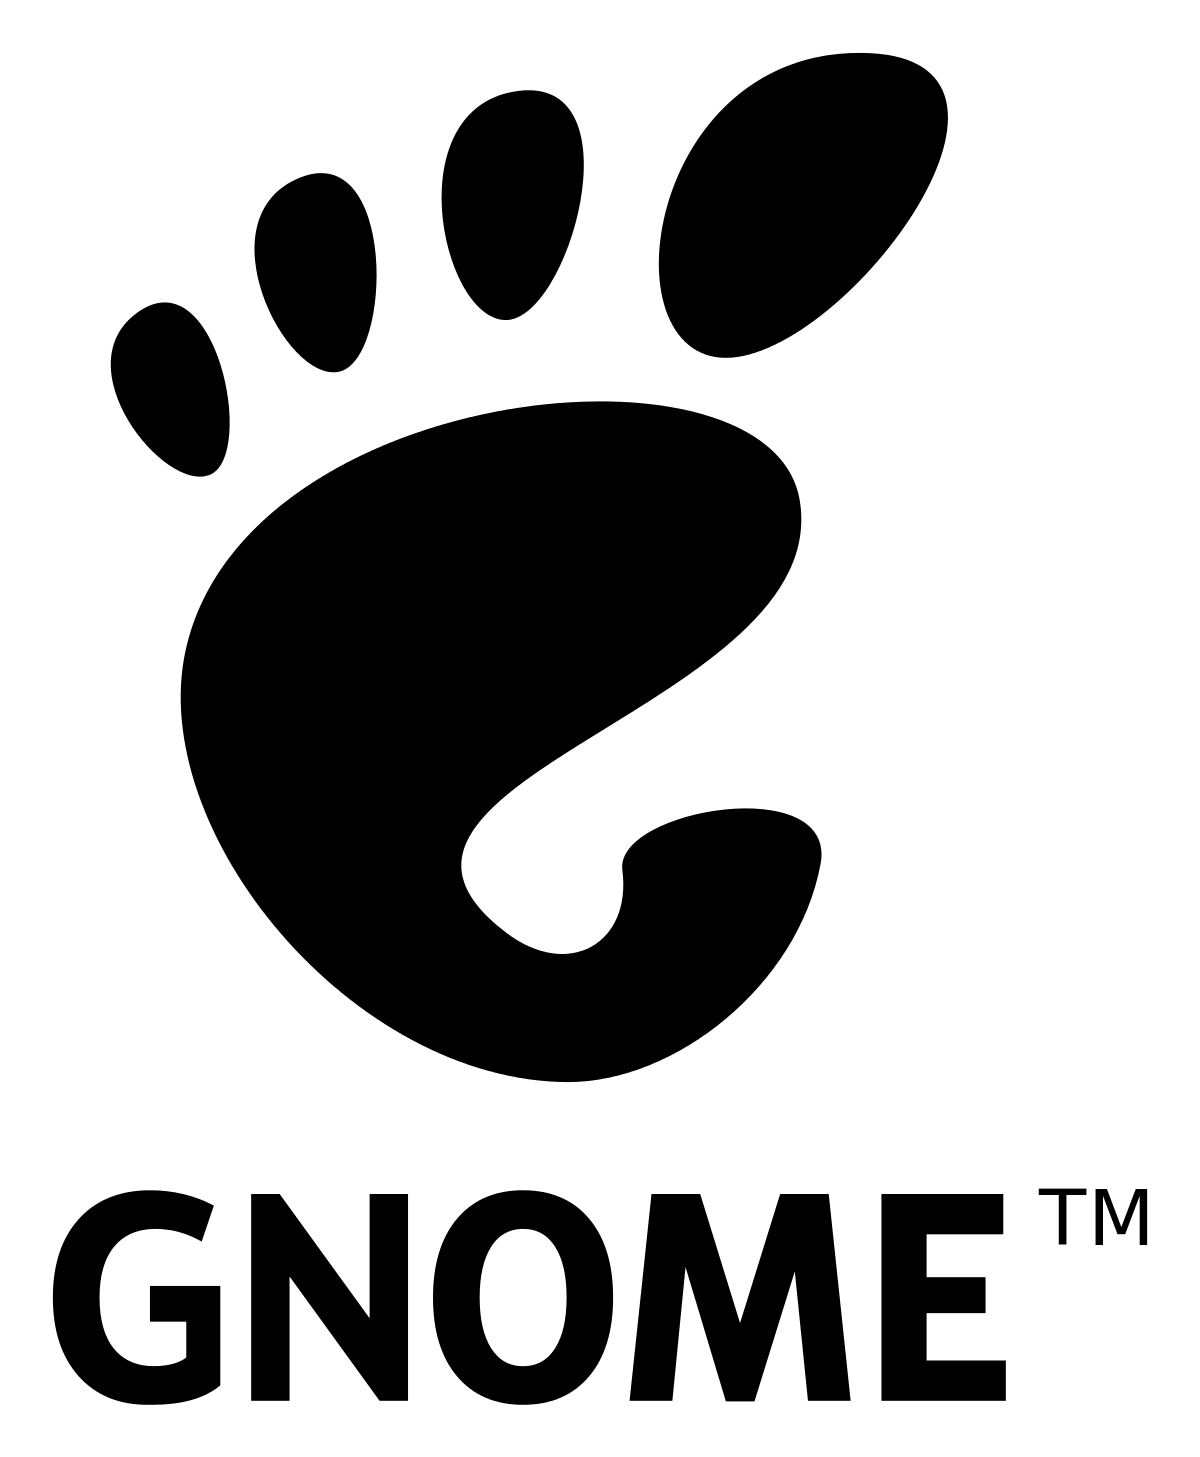 Latest Linux Logo - GNOME Project unveils latest version of Linux and Unix desktop ...